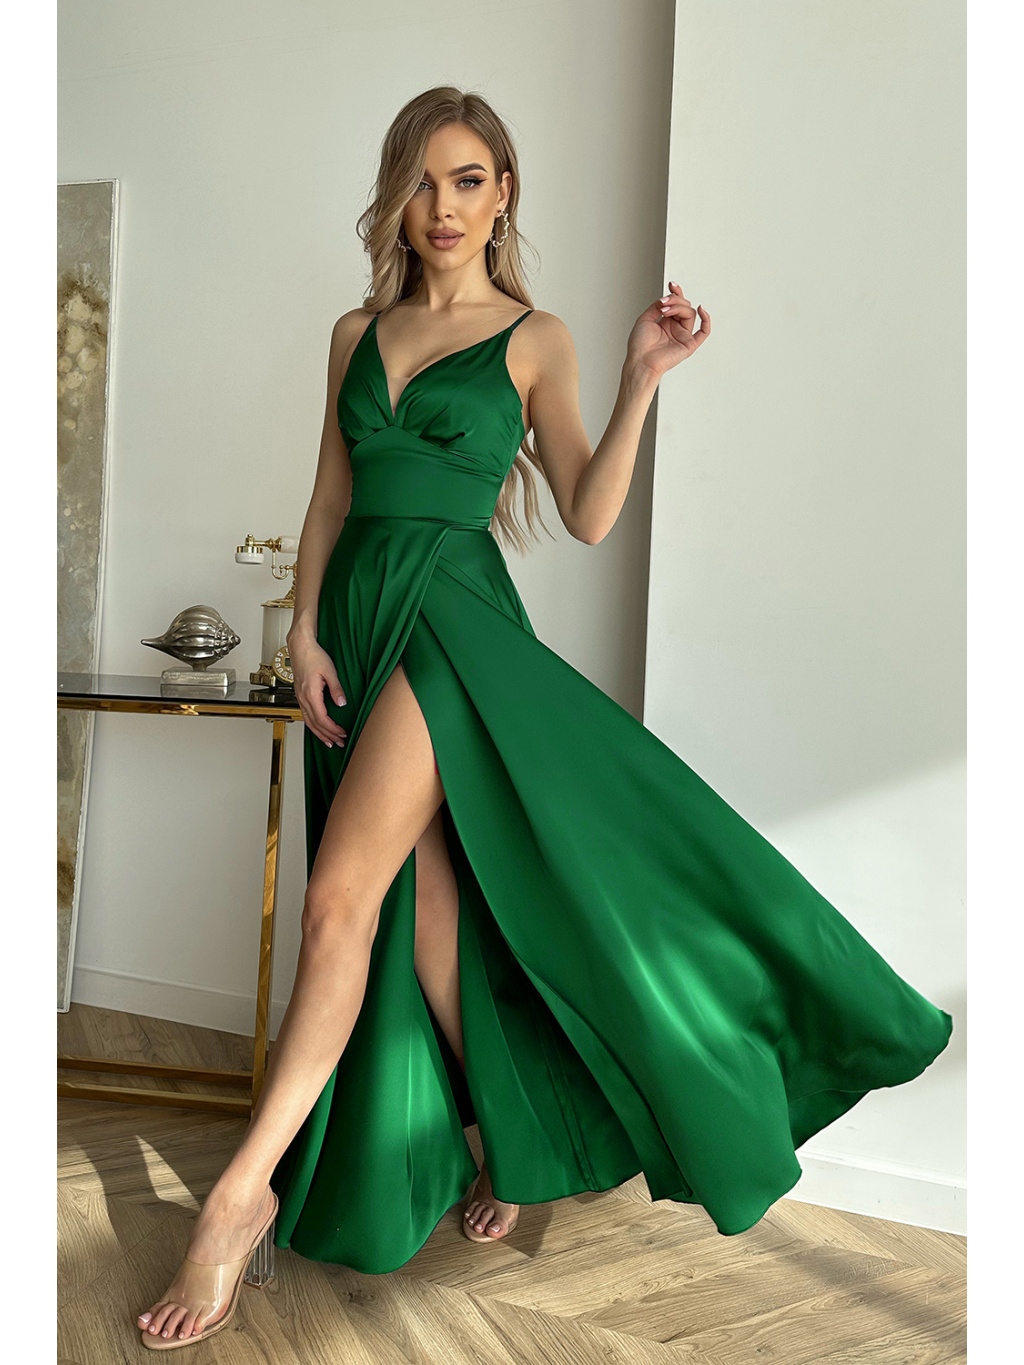 Graciózne spoločenské zelené šaty